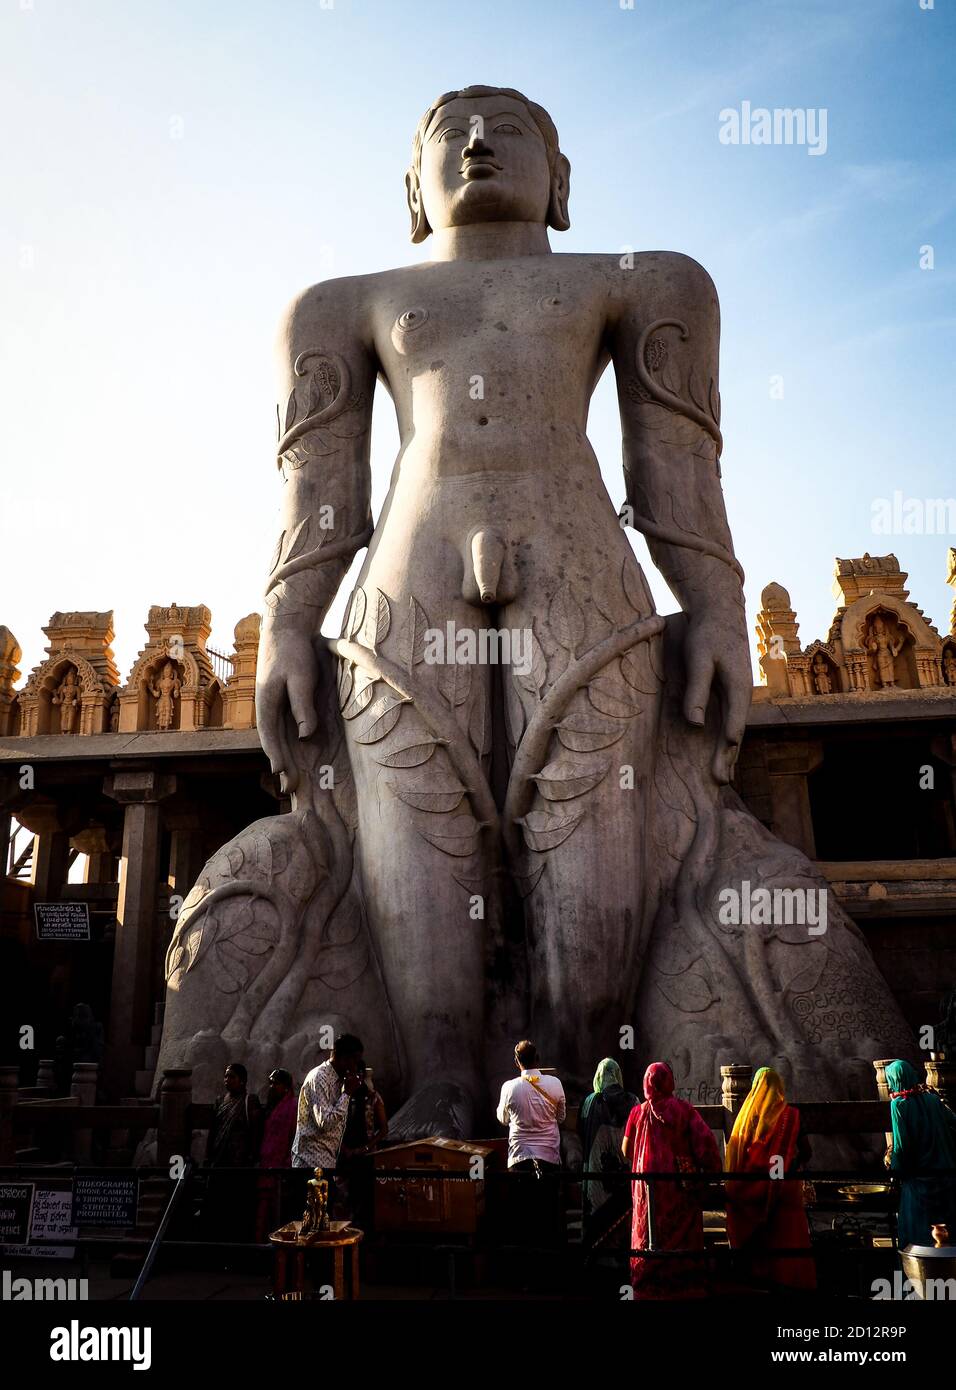 Statue von Jain gott im heiligen Tempel in Shravanabelagola in Südindien während des morgendlichen pooja Rituals. Stockfoto